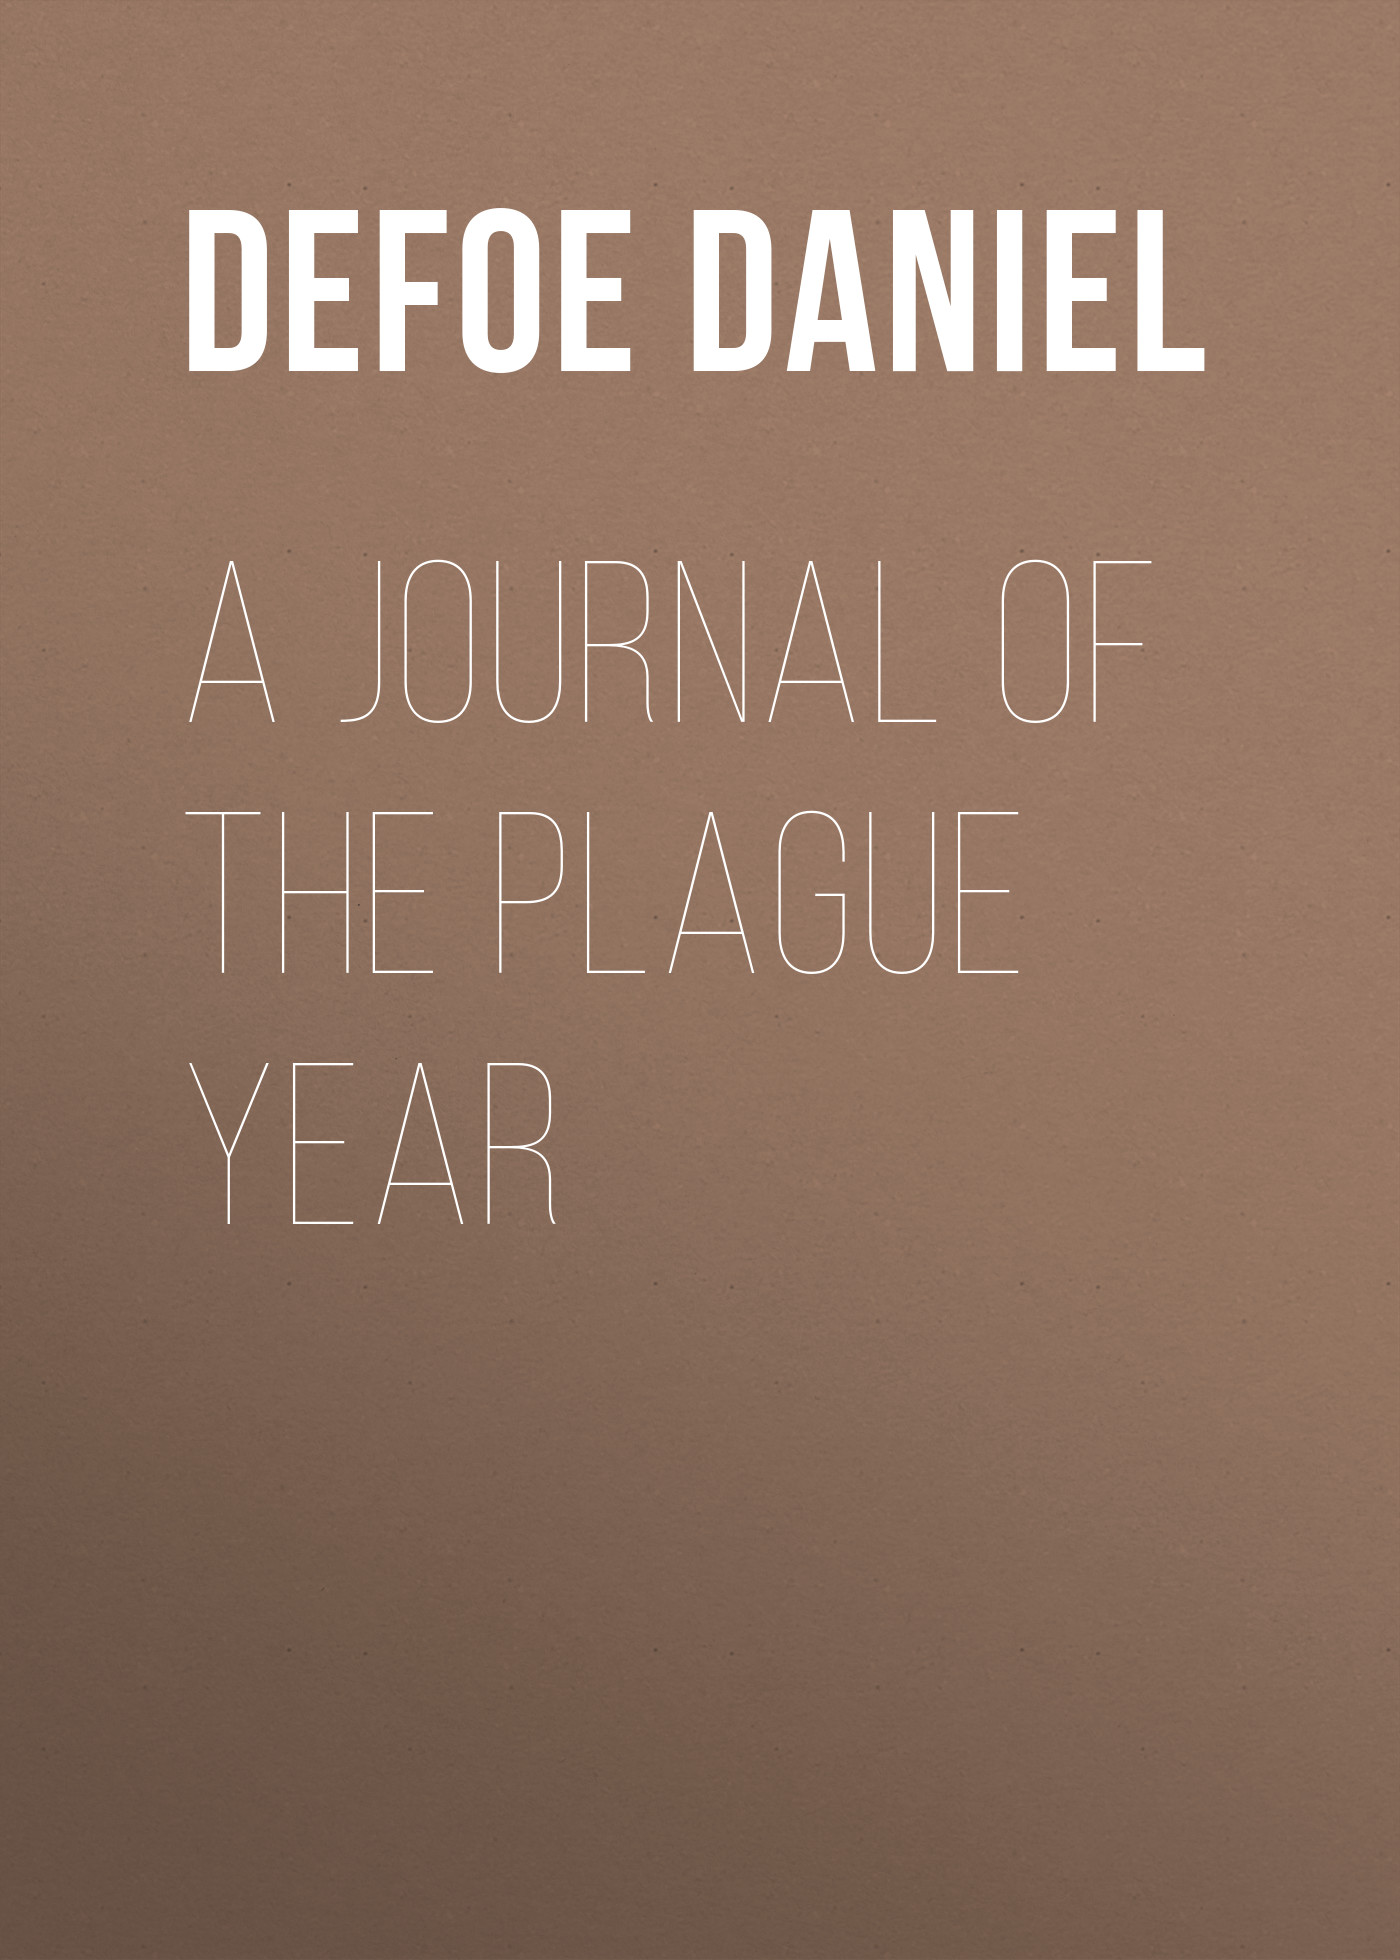 Книга A Journal of the Plague Year из серии , созданная Daniel Defoe, может относится к жанру Зарубежная старинная литература, Зарубежная классика. Стоимость электронной книги A Journal of the Plague Year с идентификатором 25091836 составляет 0 руб.